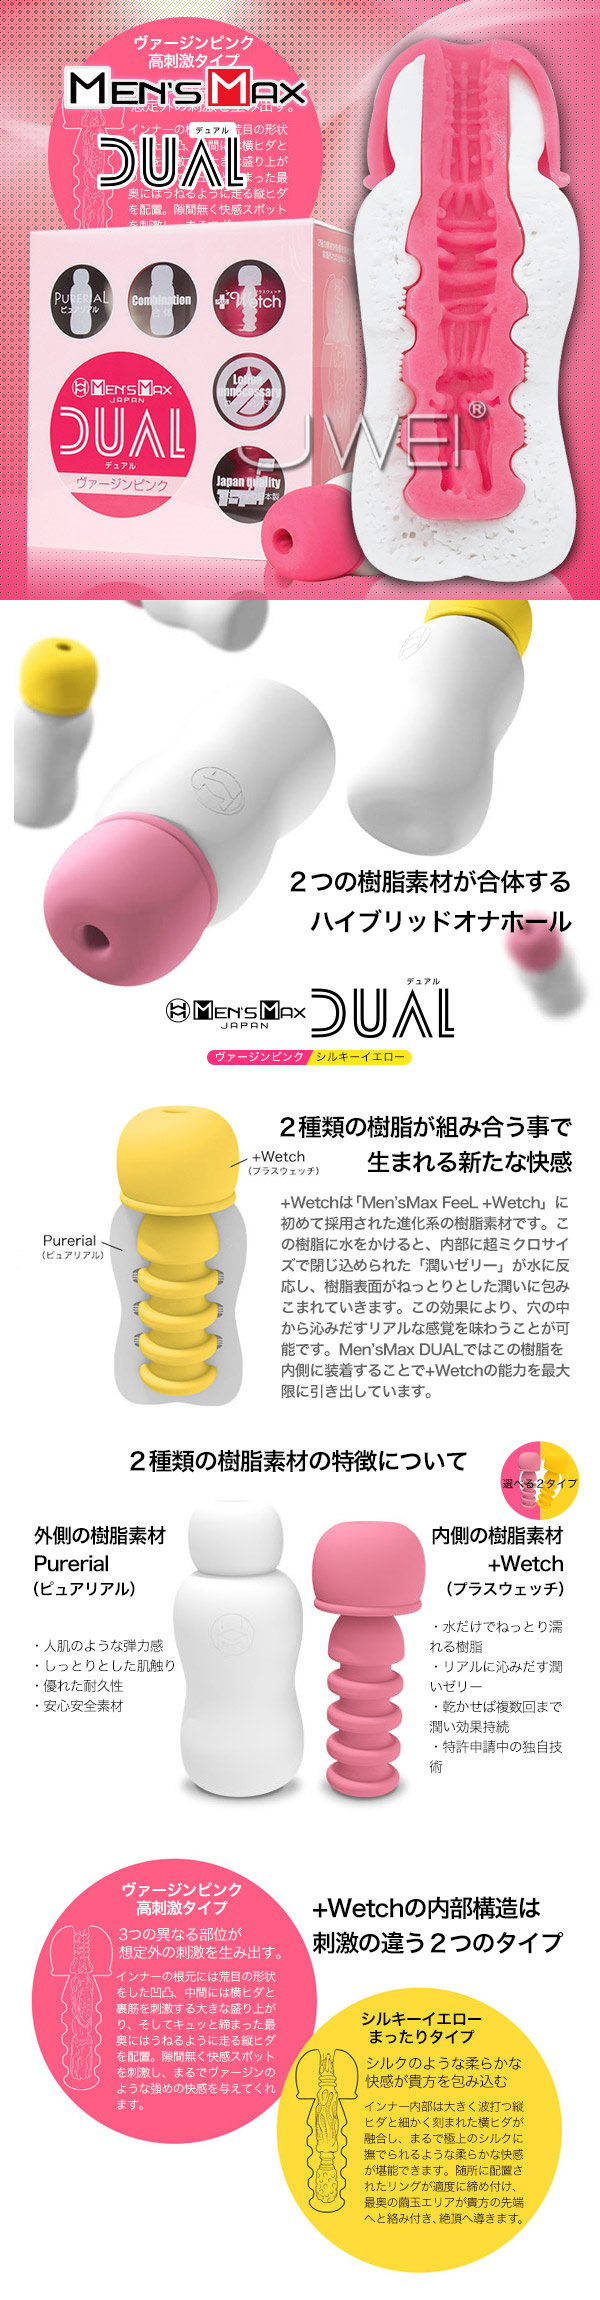 日本MENS MAX‧DUAL ヴァージンピンク 雙層構造組合式自慰器-粉